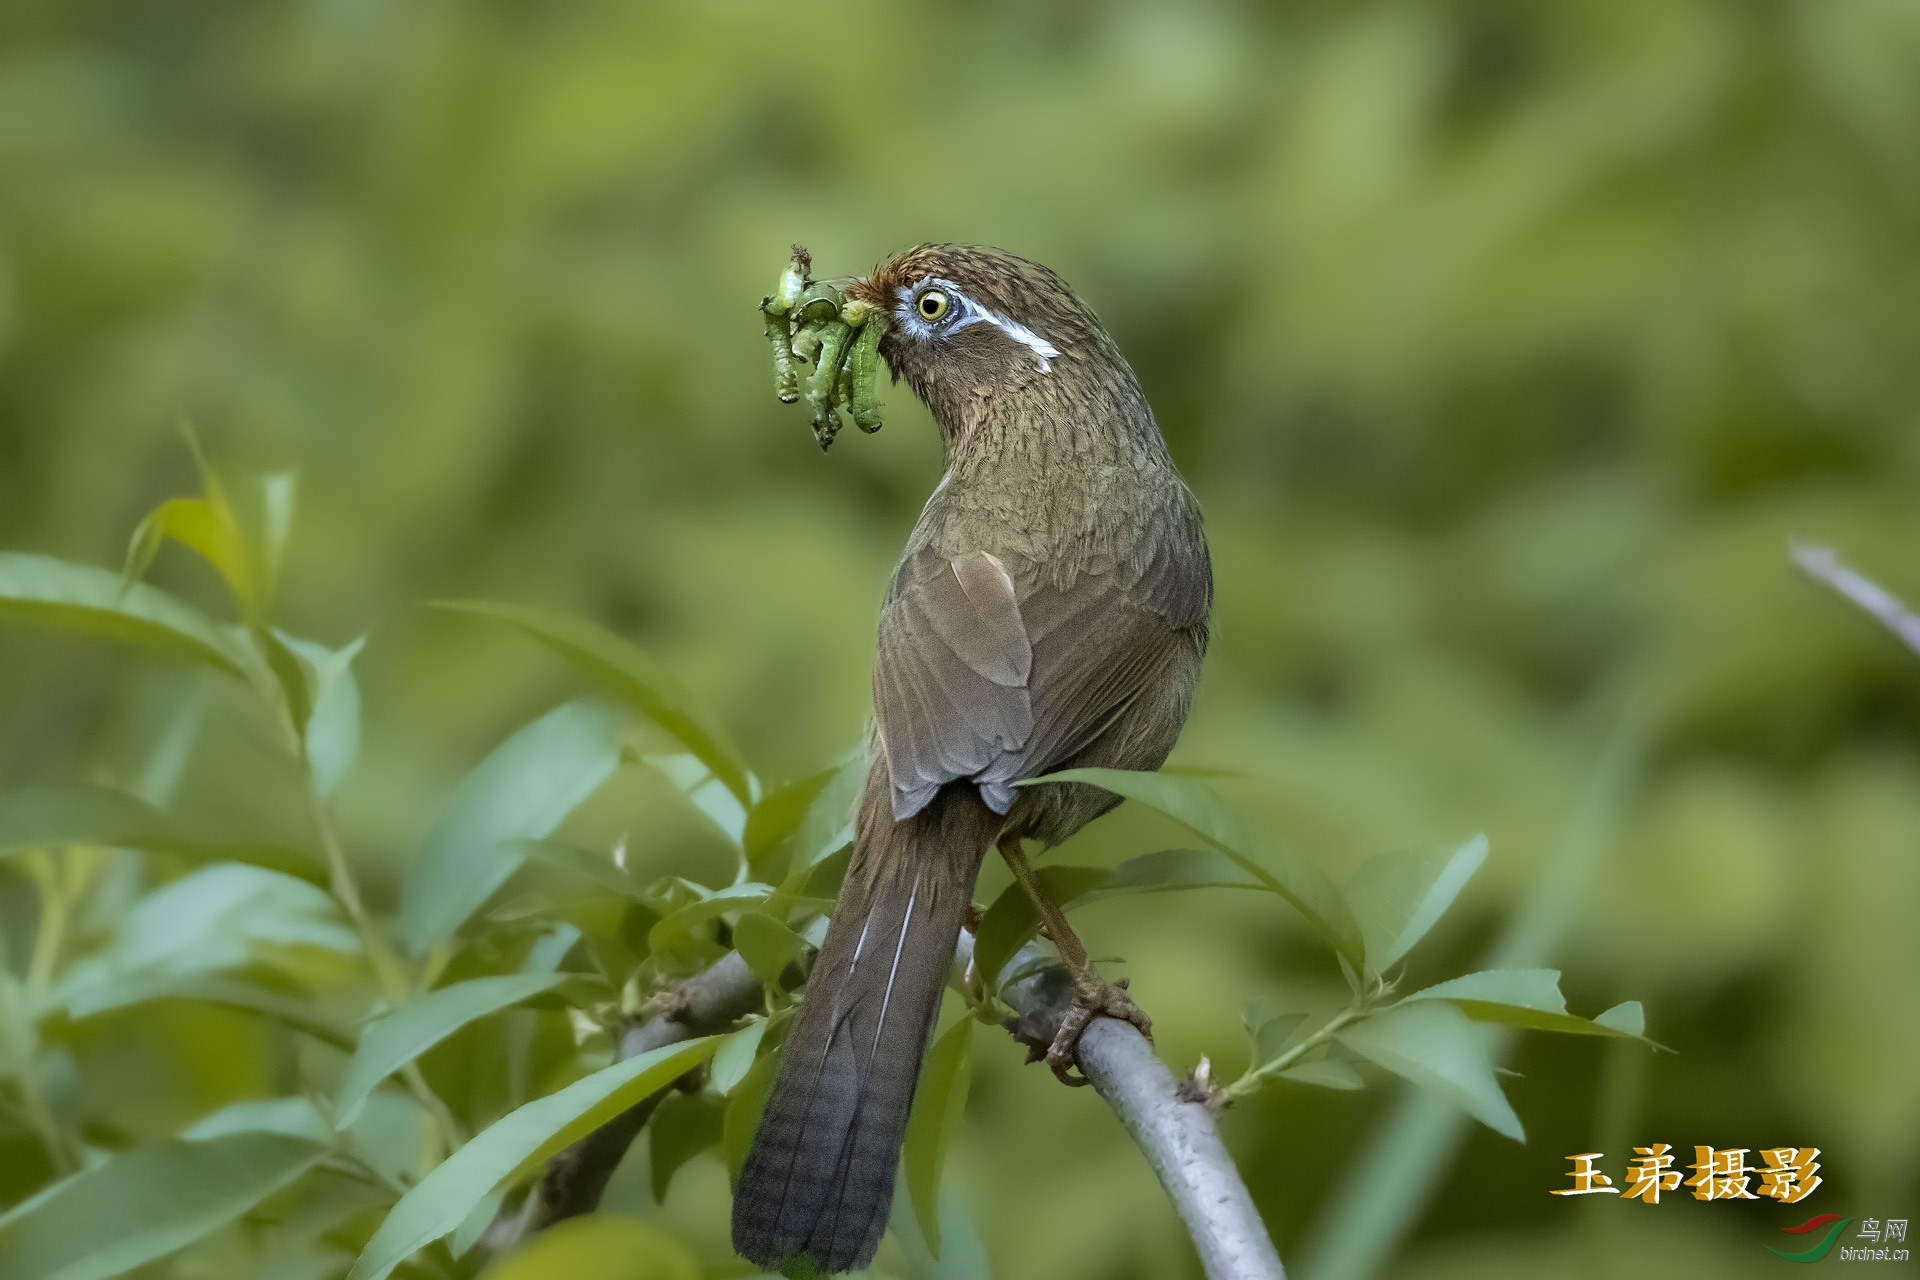 育雏的画眉鸟在桃林间辛勤的捕捉虫子